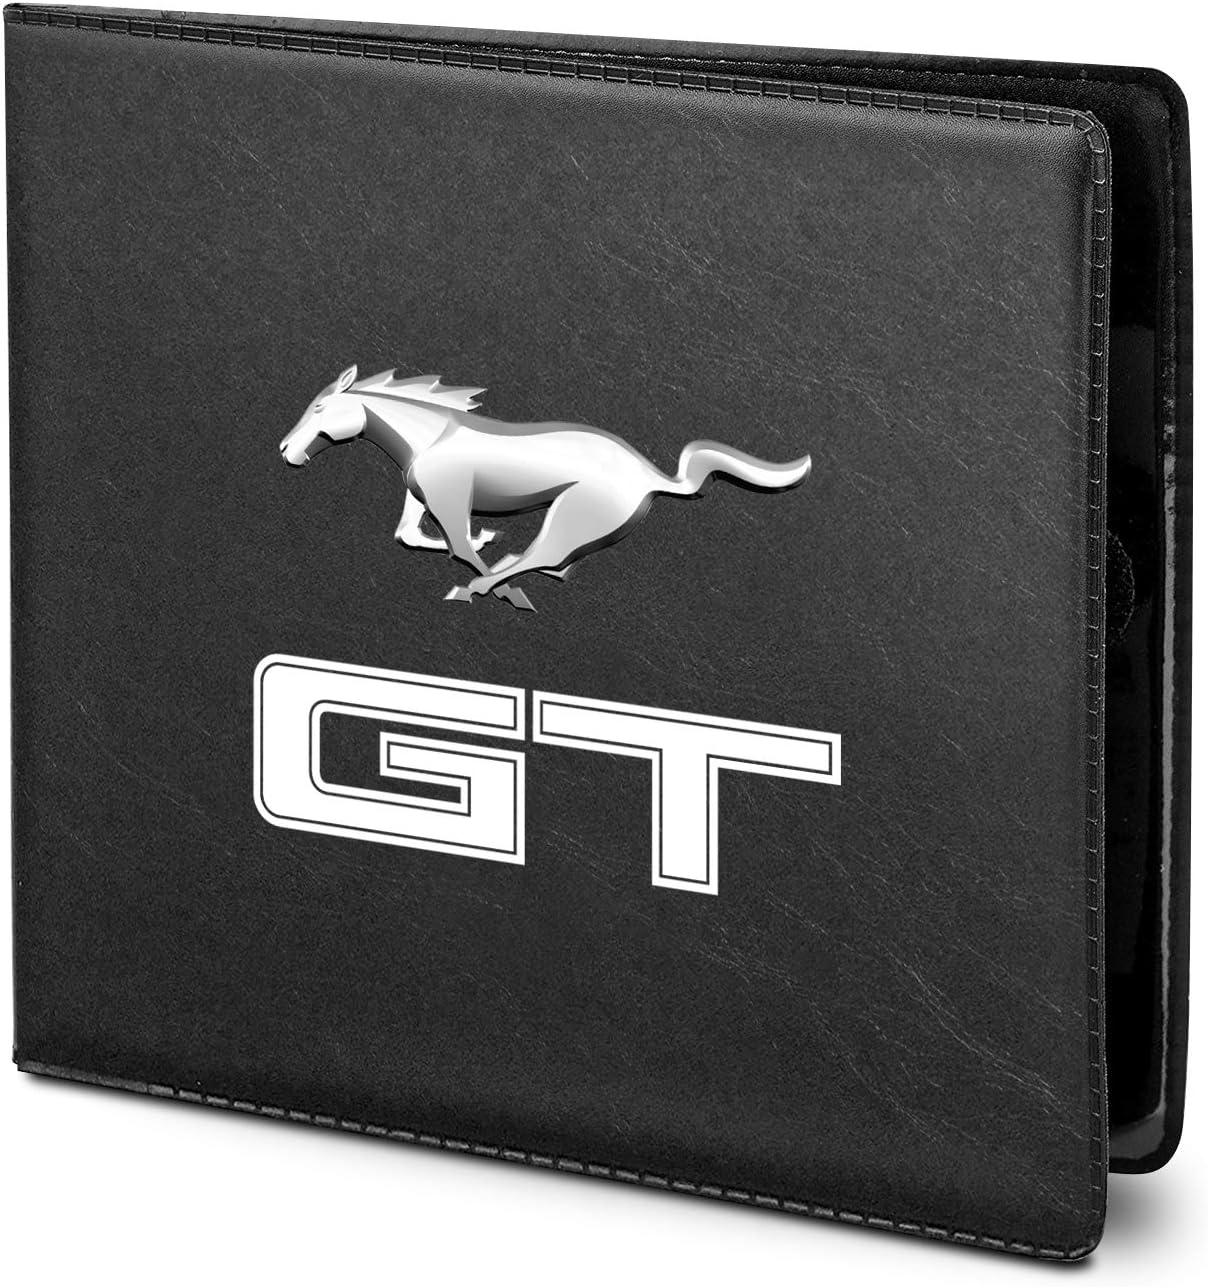 Ford Mustang Fahrzeugschein-Etui schwarz mit Running Horse und GT Schriftzug vorne